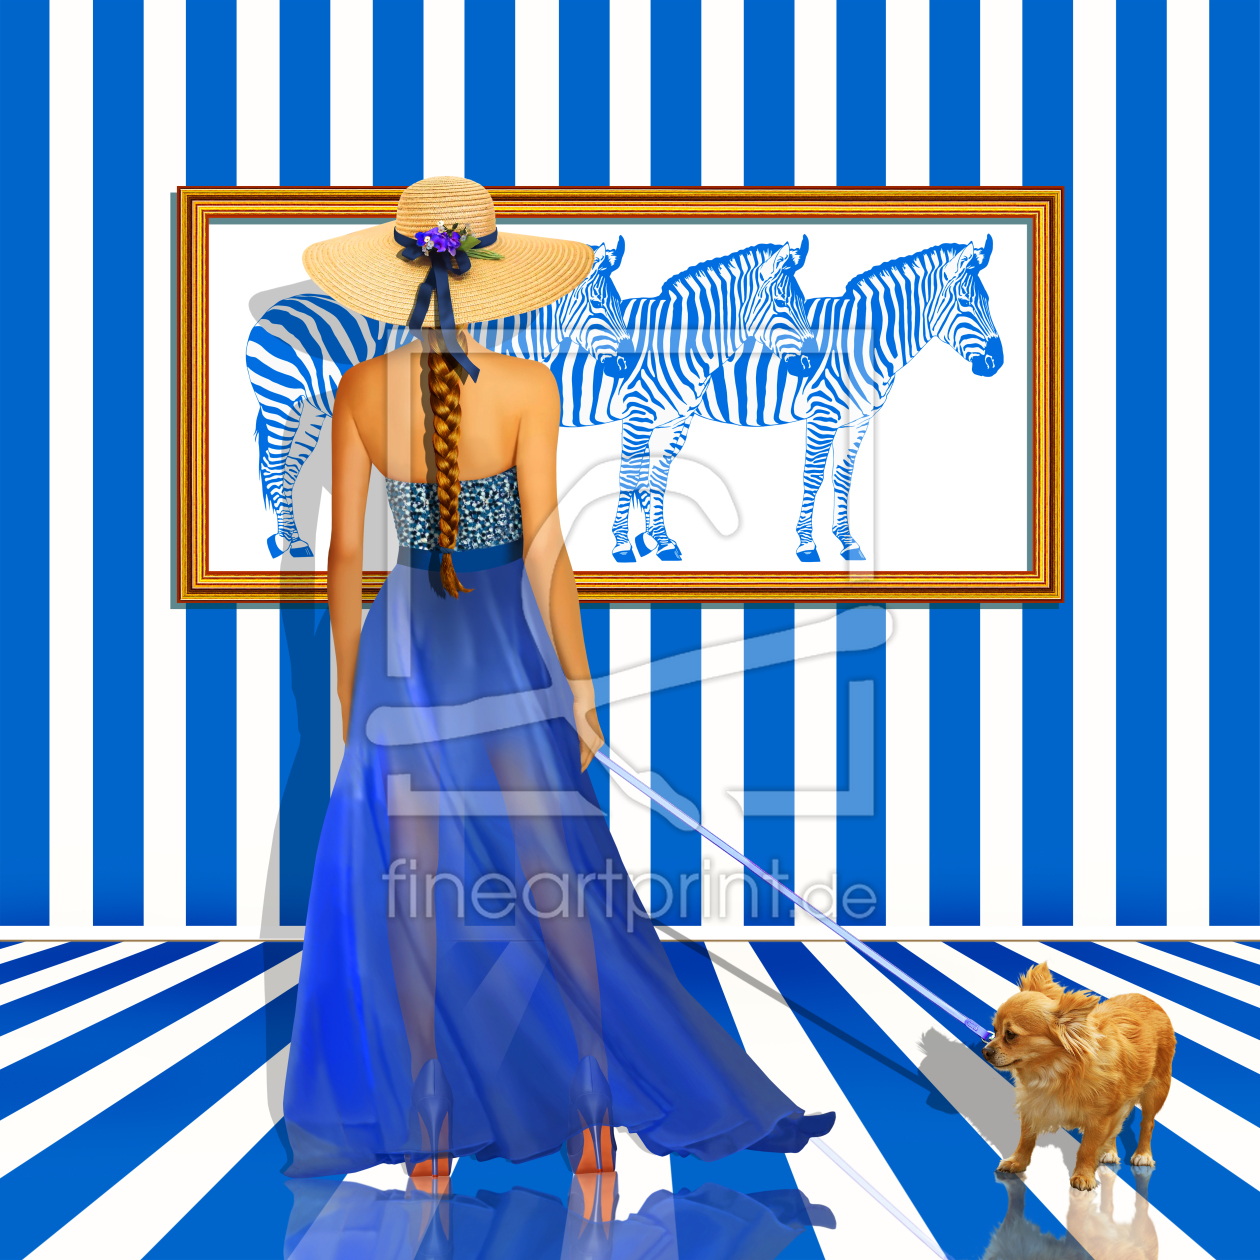 Bild-Nr.: 11570234 Serie: Das Damenquartett 2 Blau-Weiss erstellt von Mausopardia